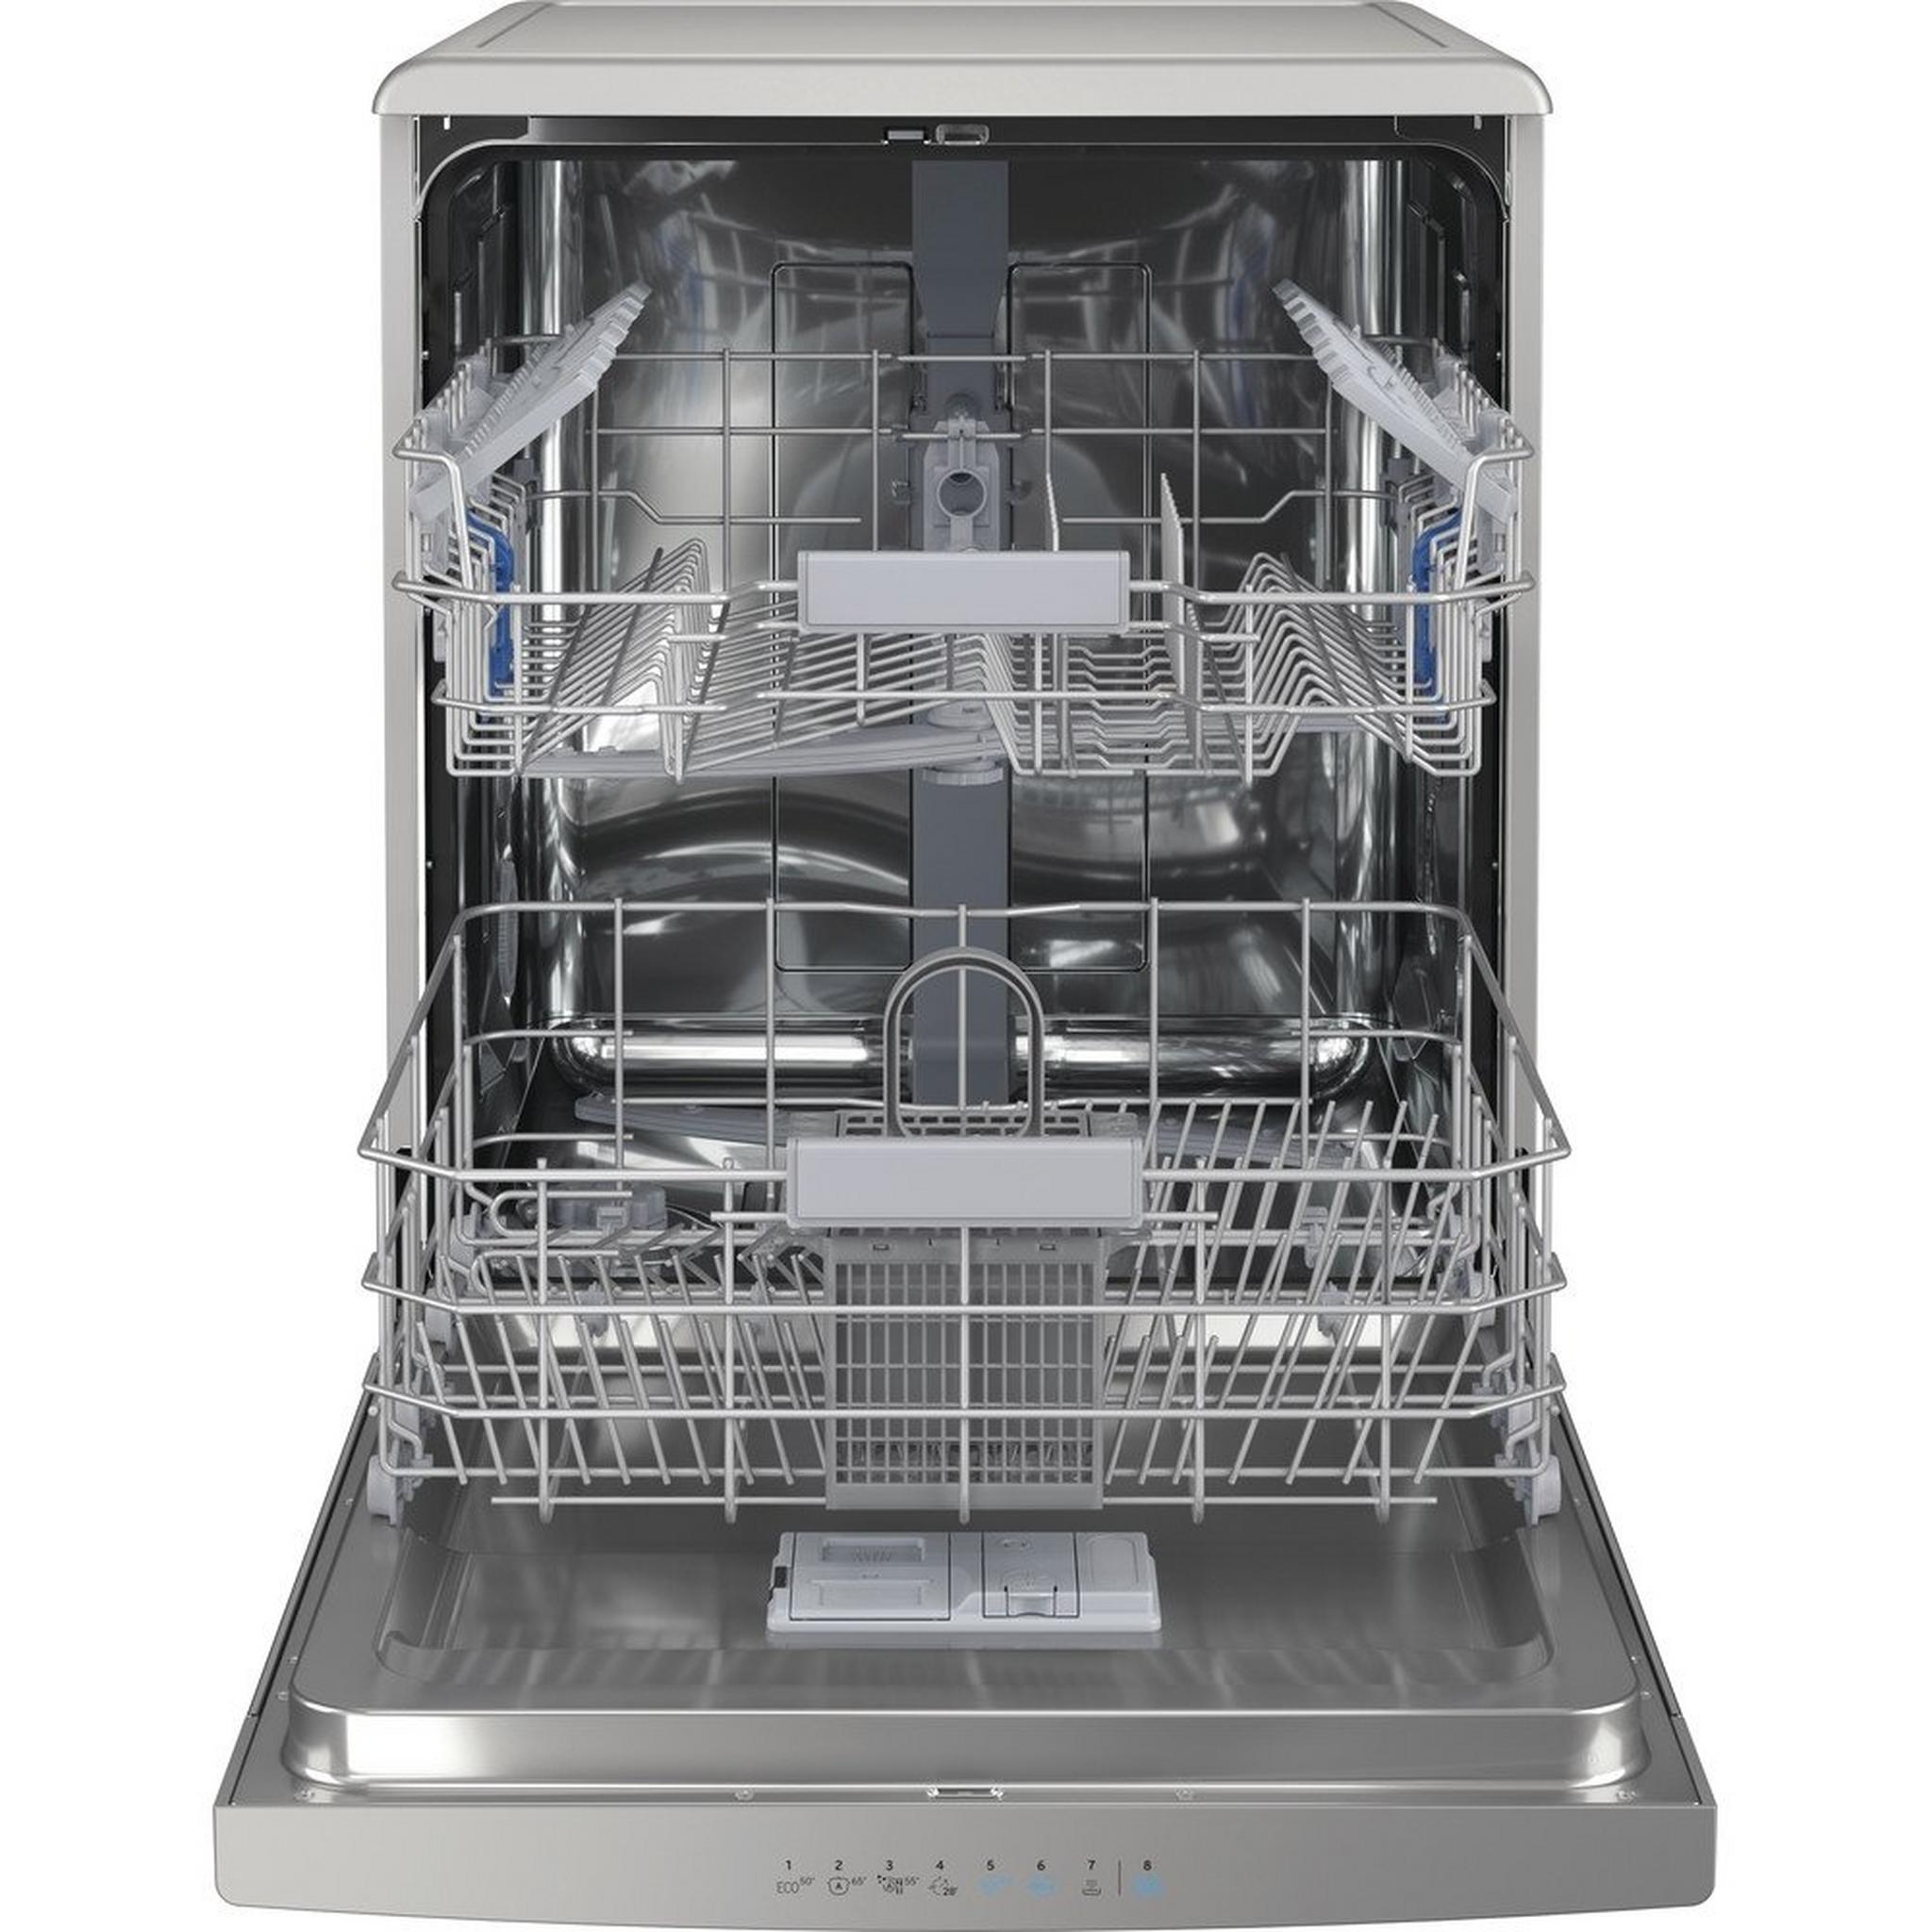 Indesit 14 Place Settings 8 Program Freestanding Dishwasher (DFO 3C23 X UK) - Inox